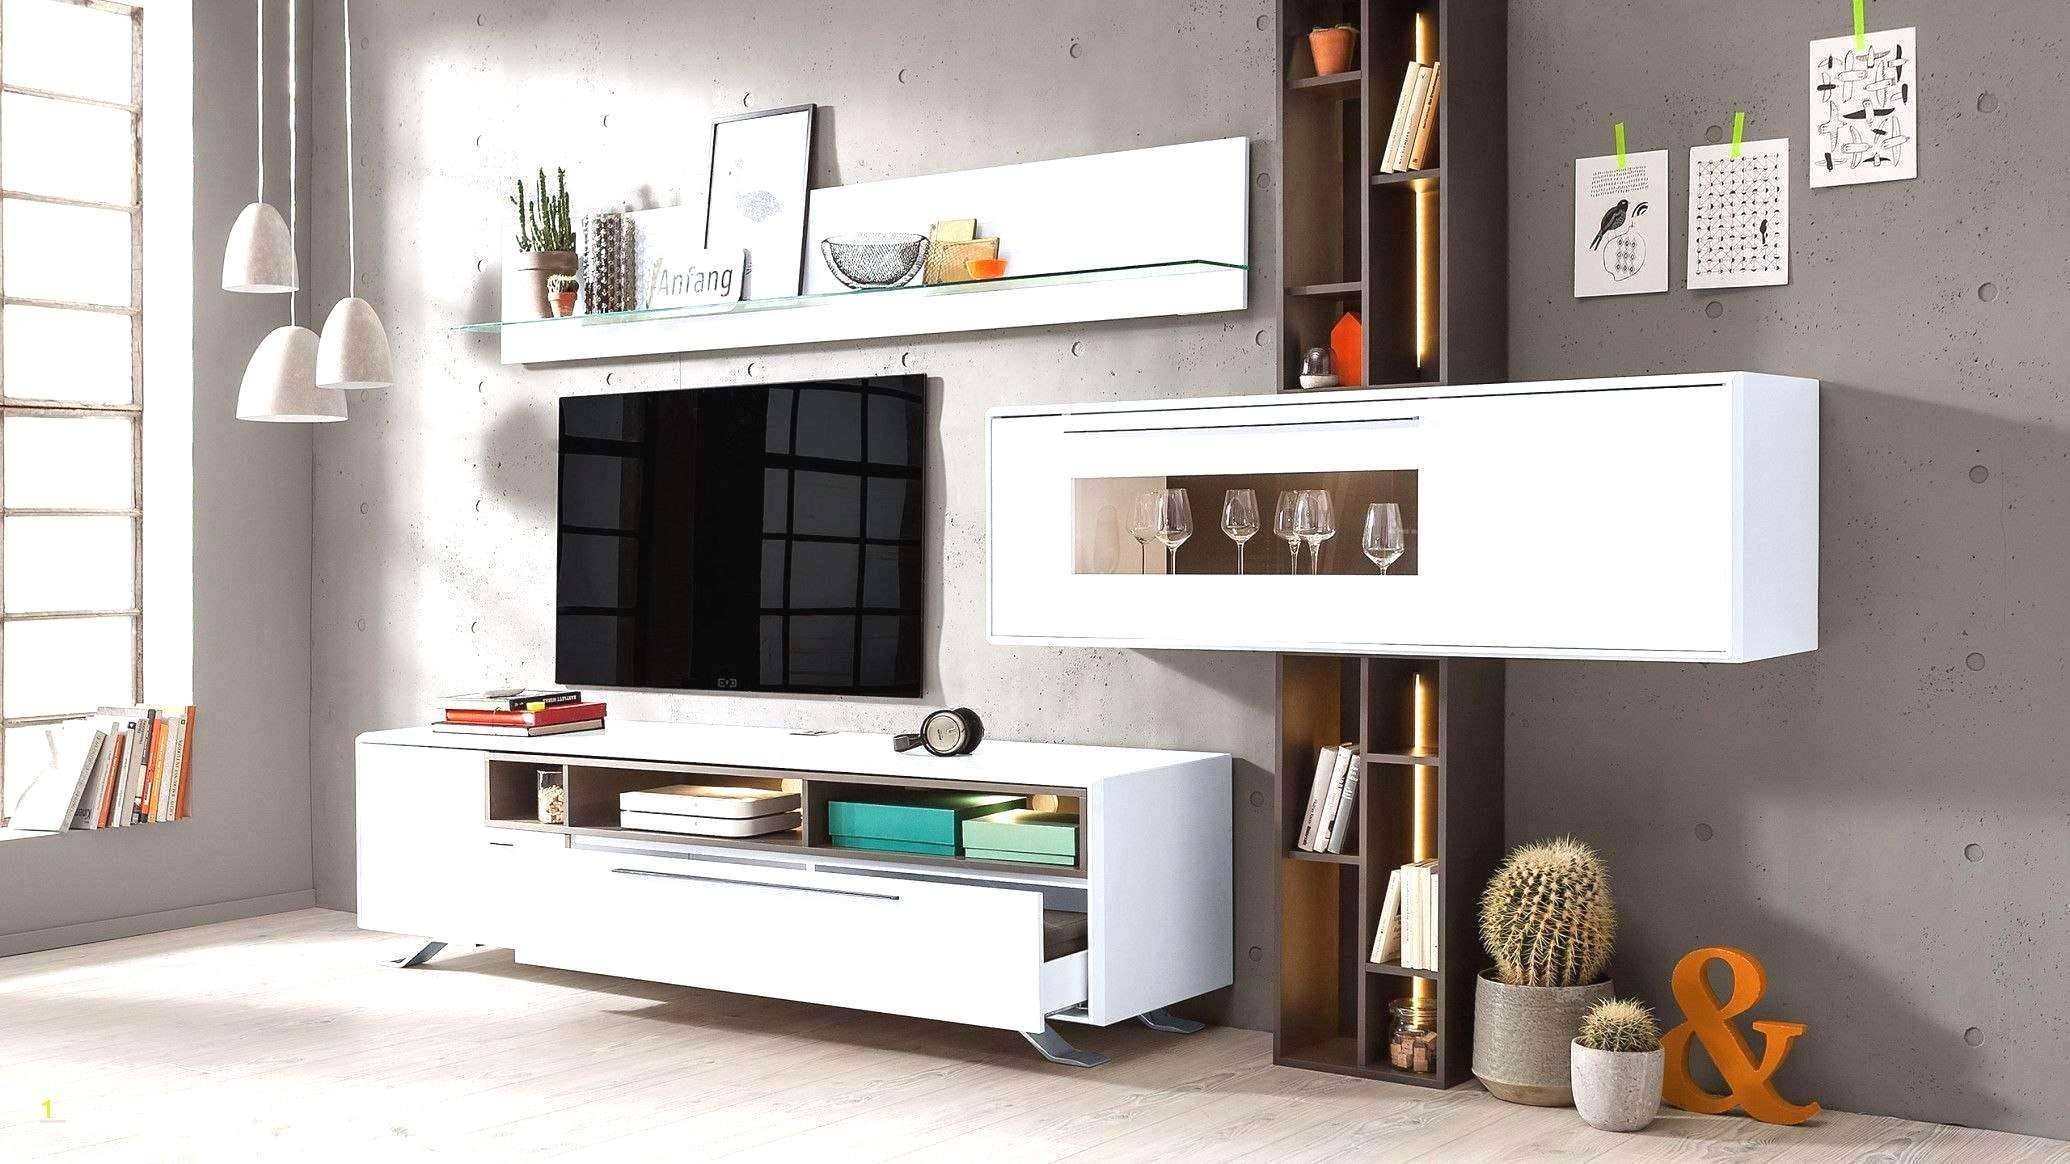 Deko Selbstgemacht Luxus Luxury Deko Ideen Selbermachen Wohnzimmer Concept